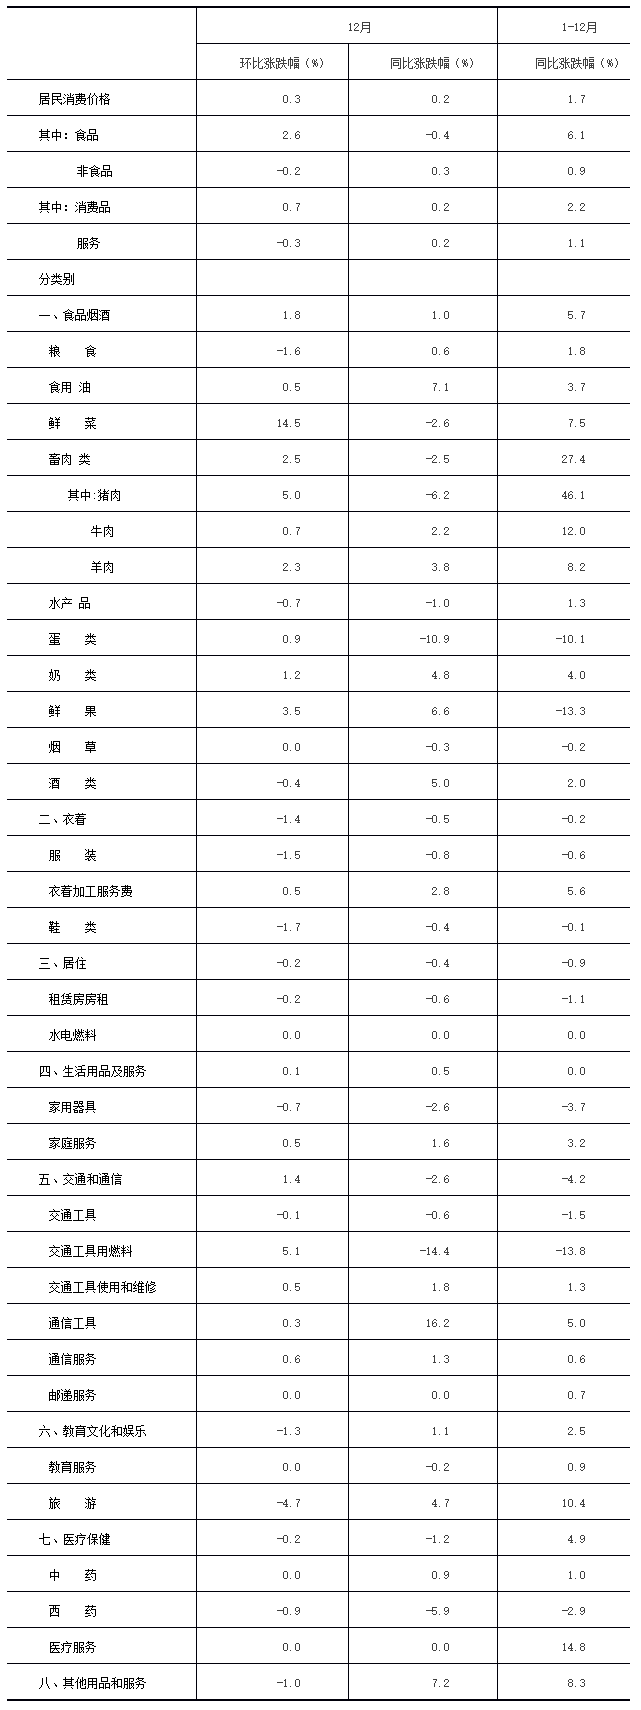 2020年12月北京市居民消費價格主要數據